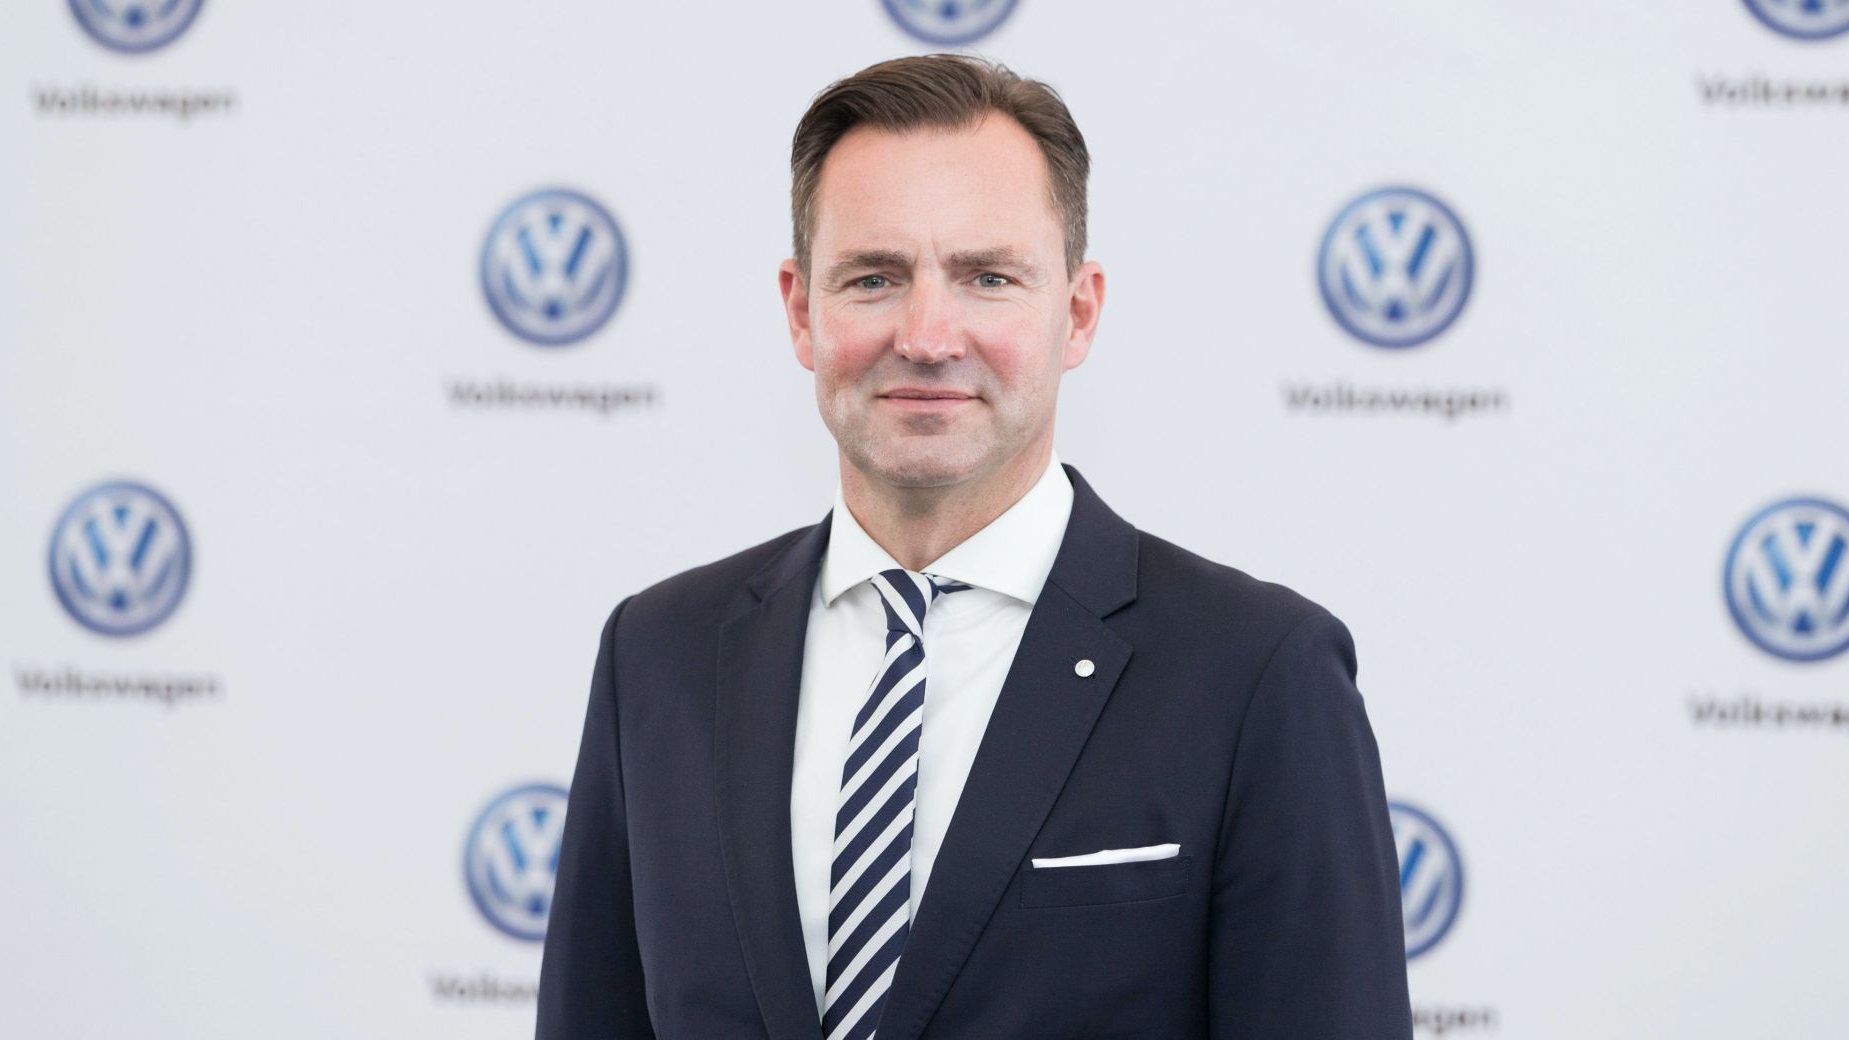 Thomas Schäfer, o CEO da Volkswagen